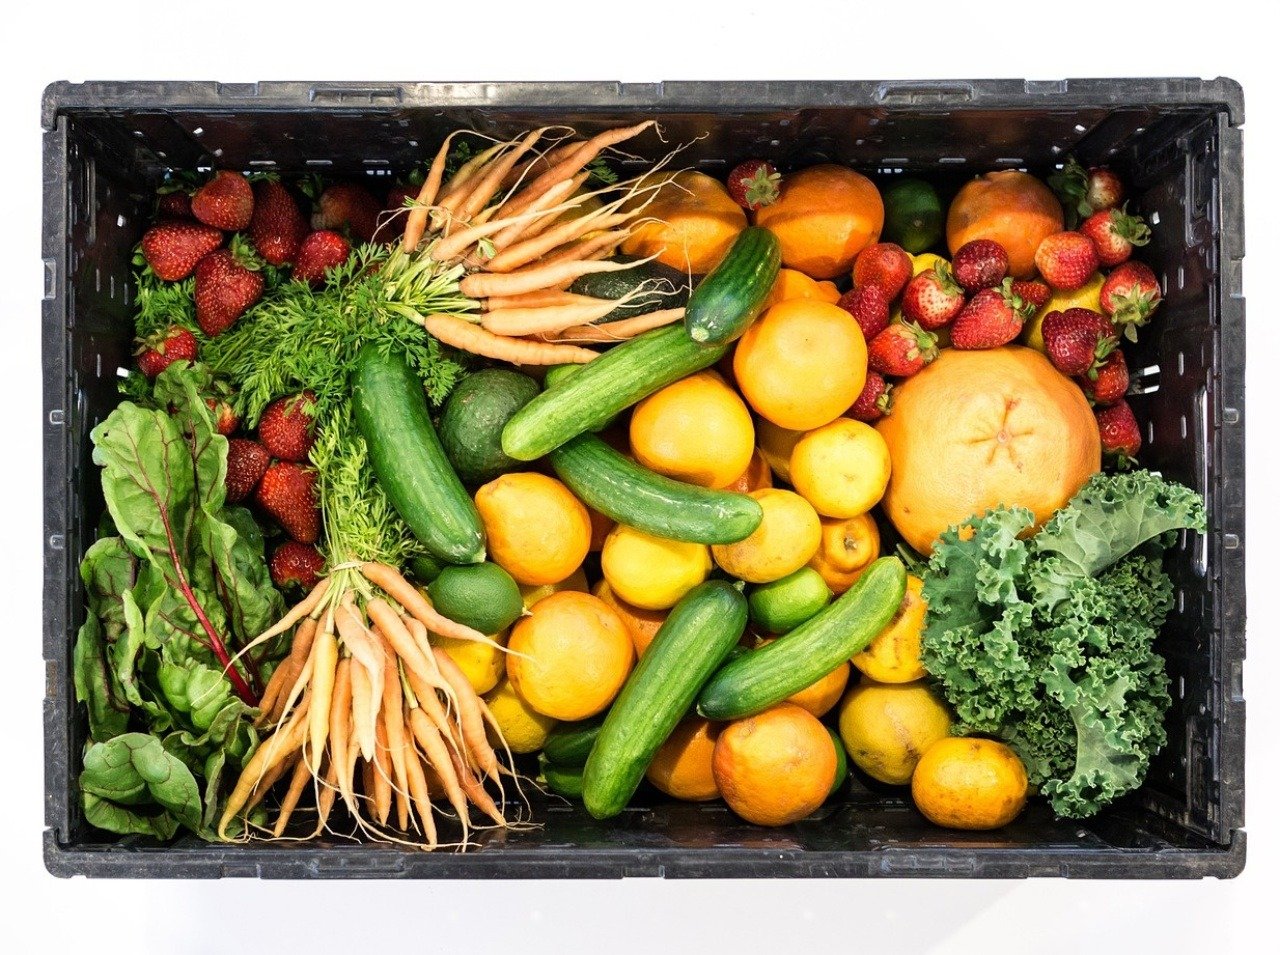 Desať porcií ovocia a zeleniny denne môže predĺžiť život.